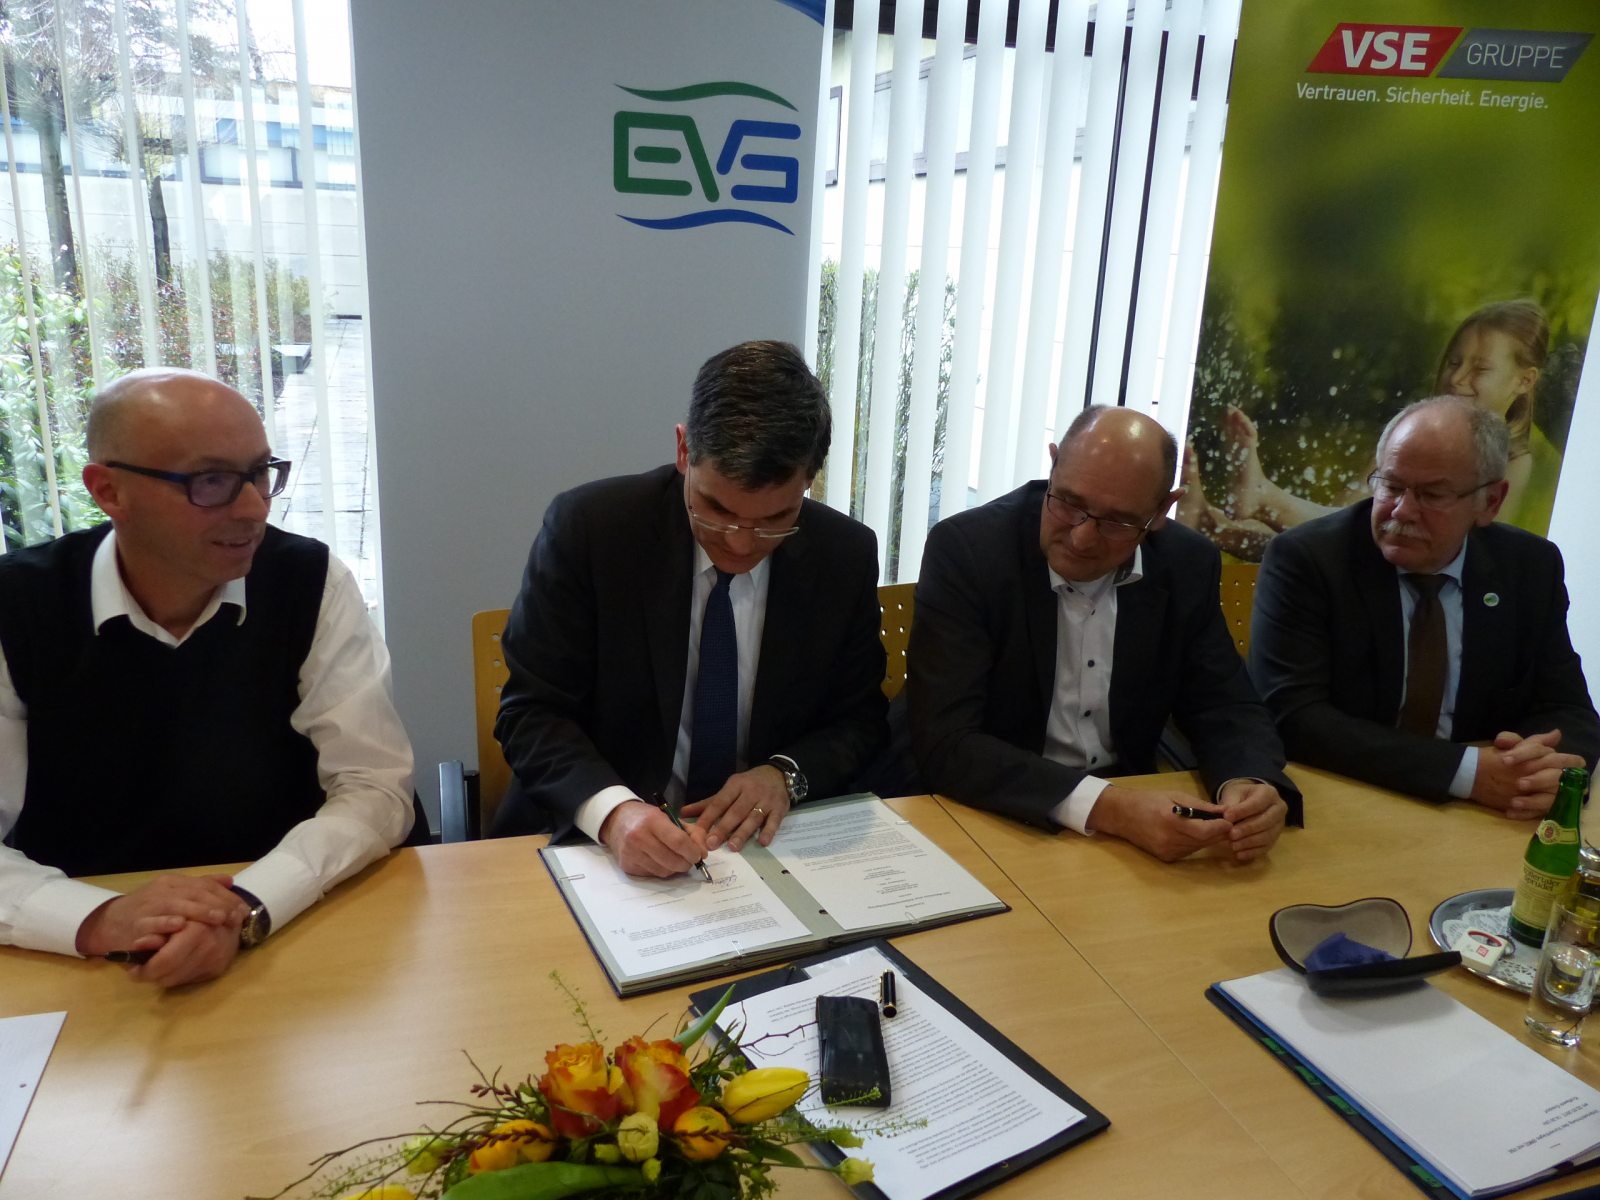 VSE und EVS unterzeichnen Vorvertrag zur Nutzung des Kraftwerksgeländes